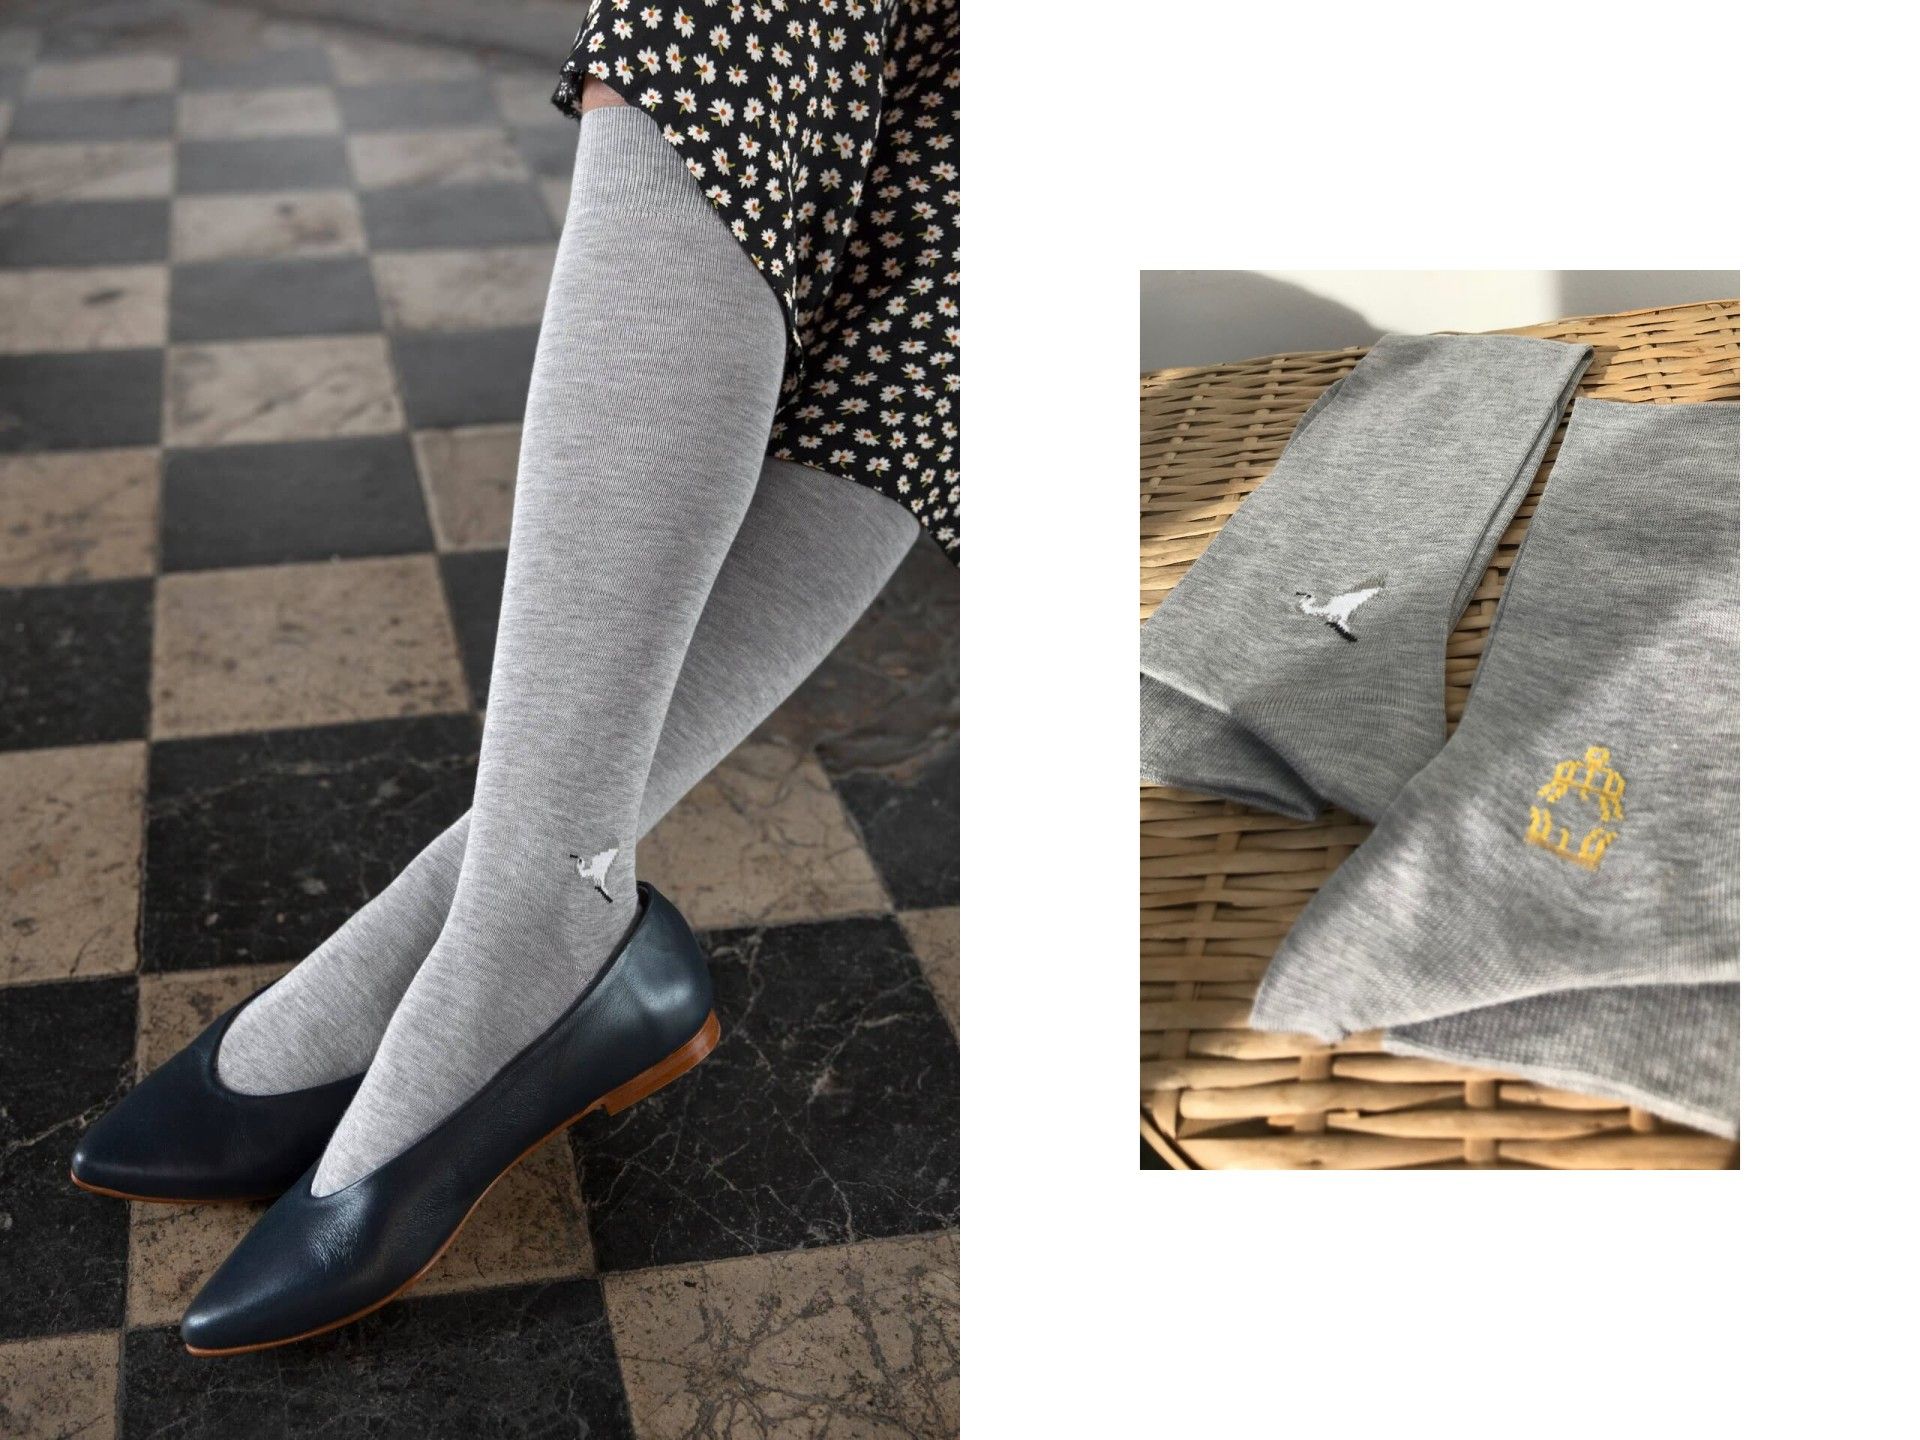 Los calcetines algodón hechos en ¡sí existen! | Calzefratelli ⋆ Blog La Ecocosmopolita